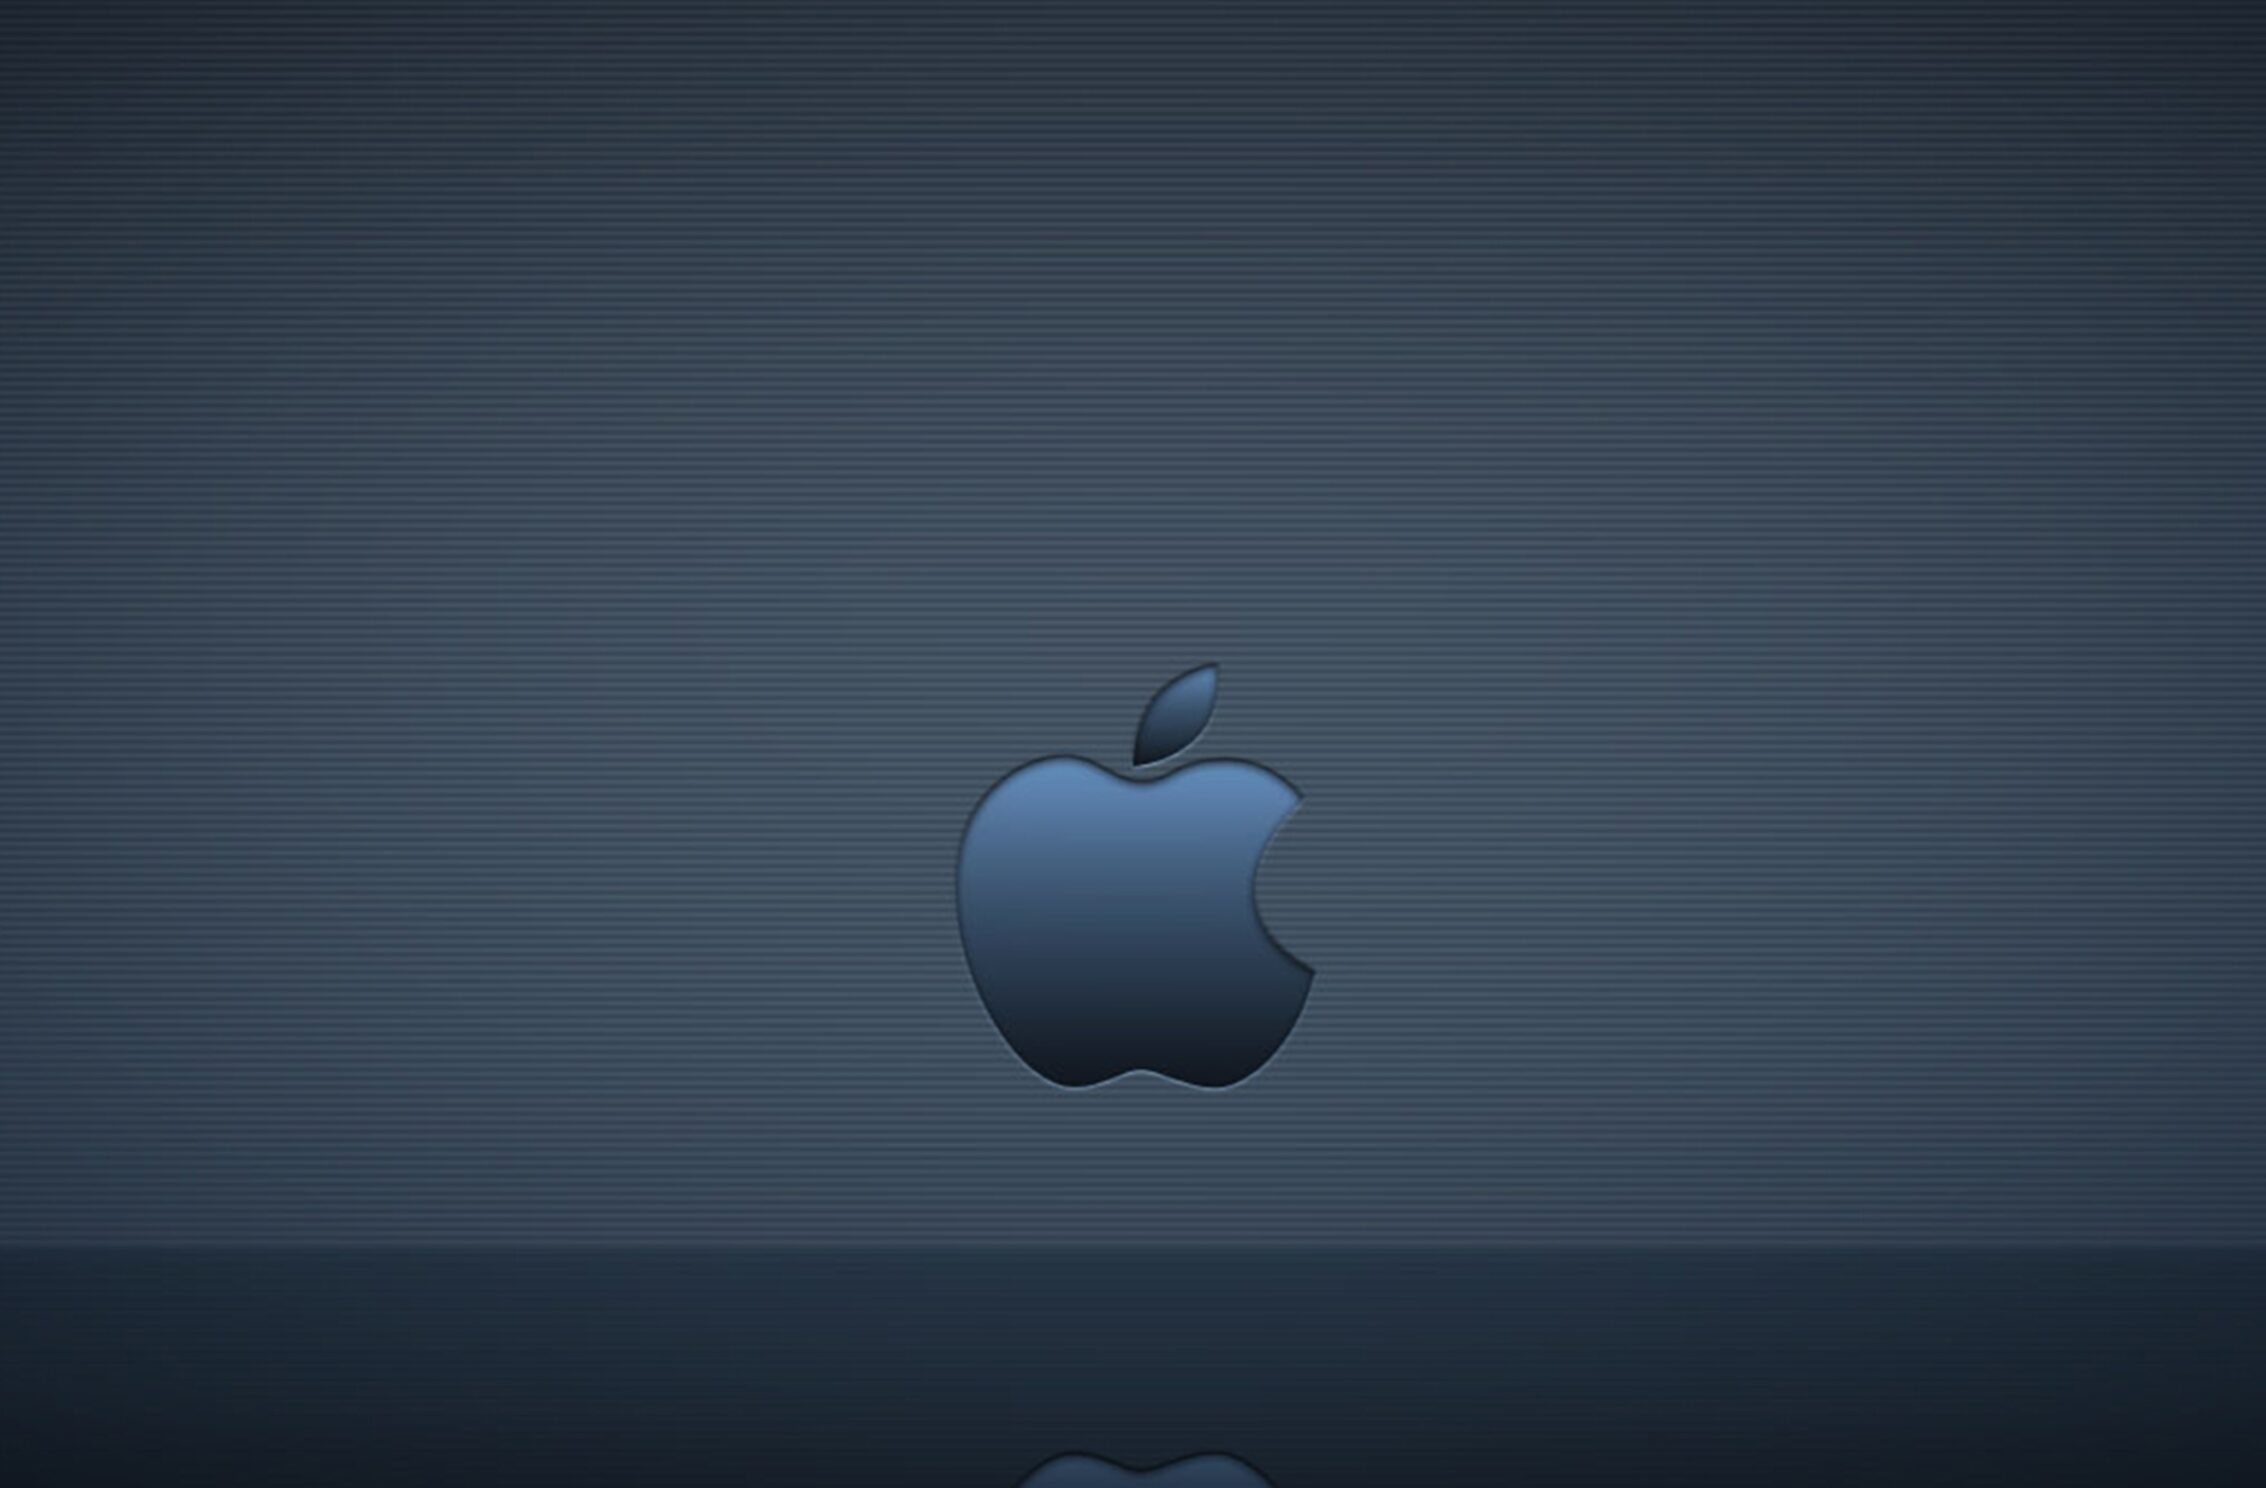 2266x1488 iPad Mini wallpapers Apple Logo Reflection Ipad Wallpaper 2266x1488 pixels resolution